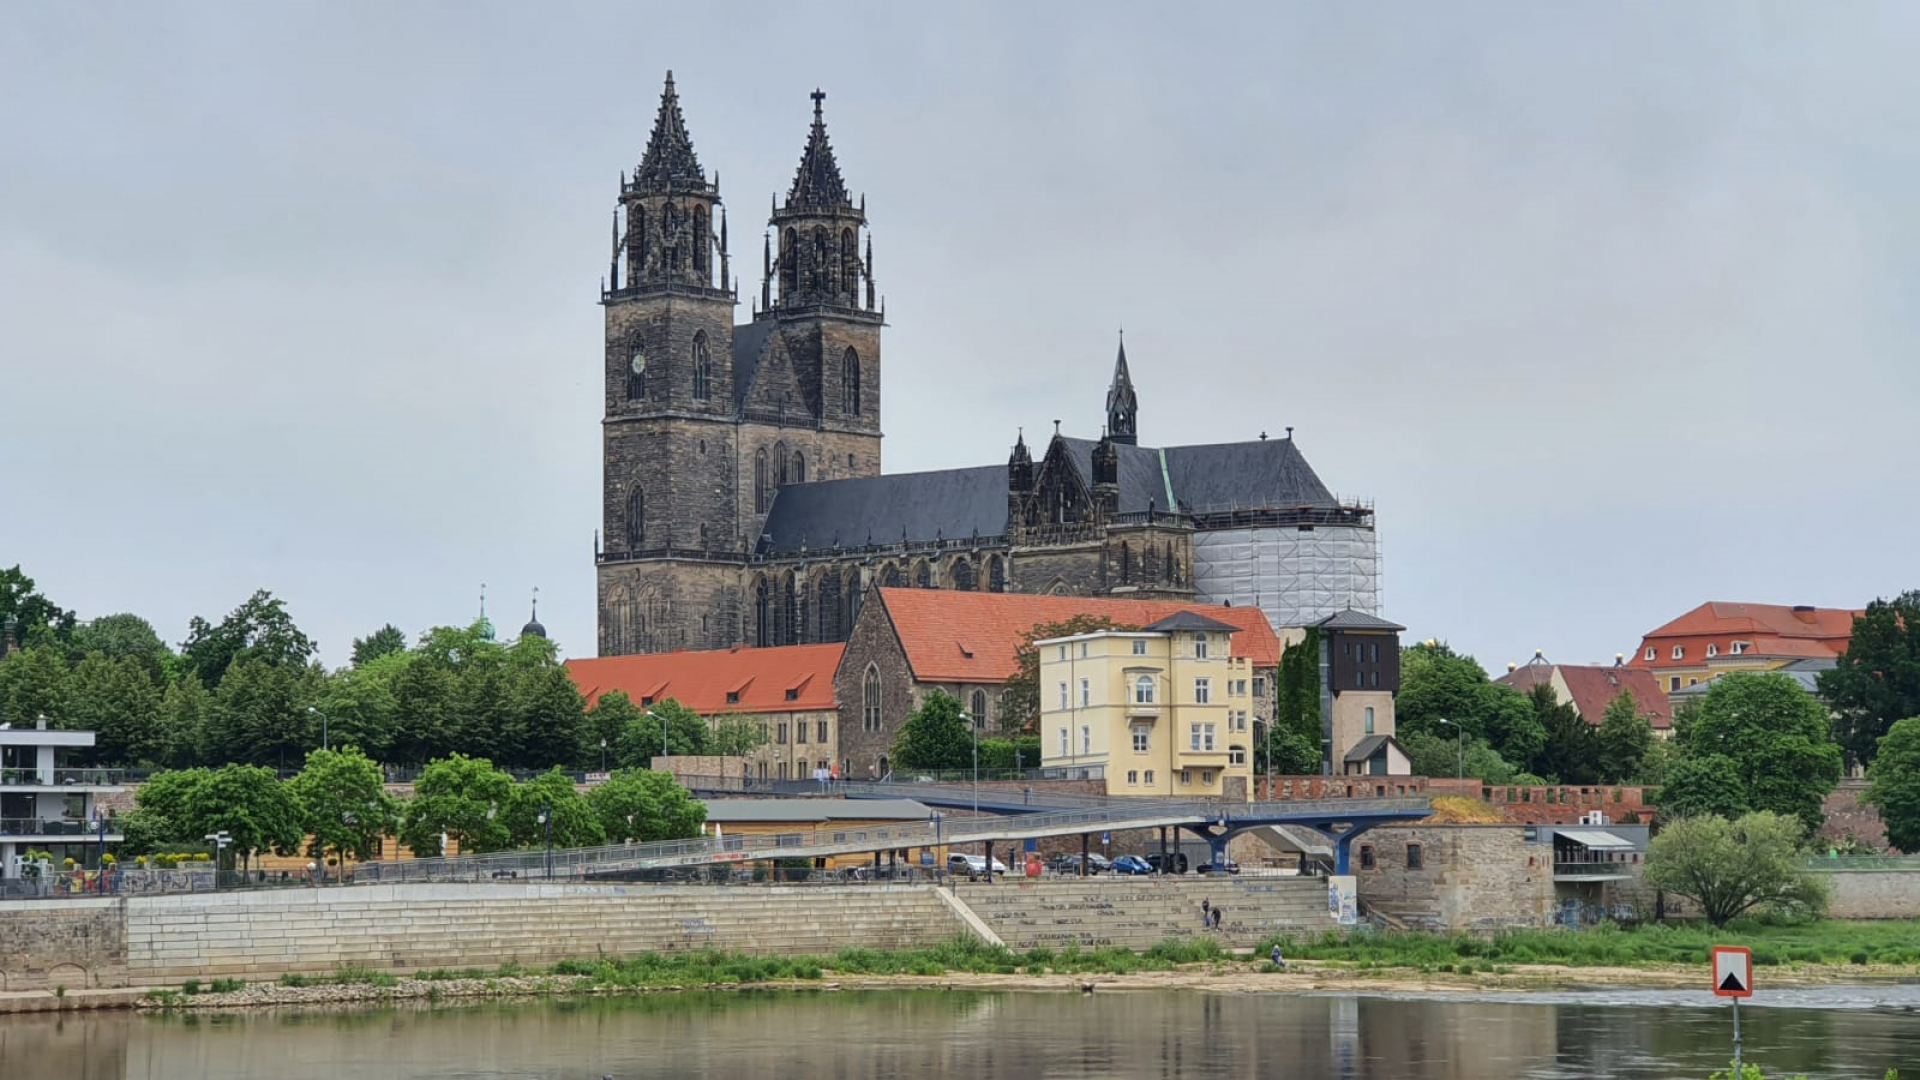 Landeshauptstadt Magdeburg als barrierefrei geprüfter Tourismusort ausgezeichnet